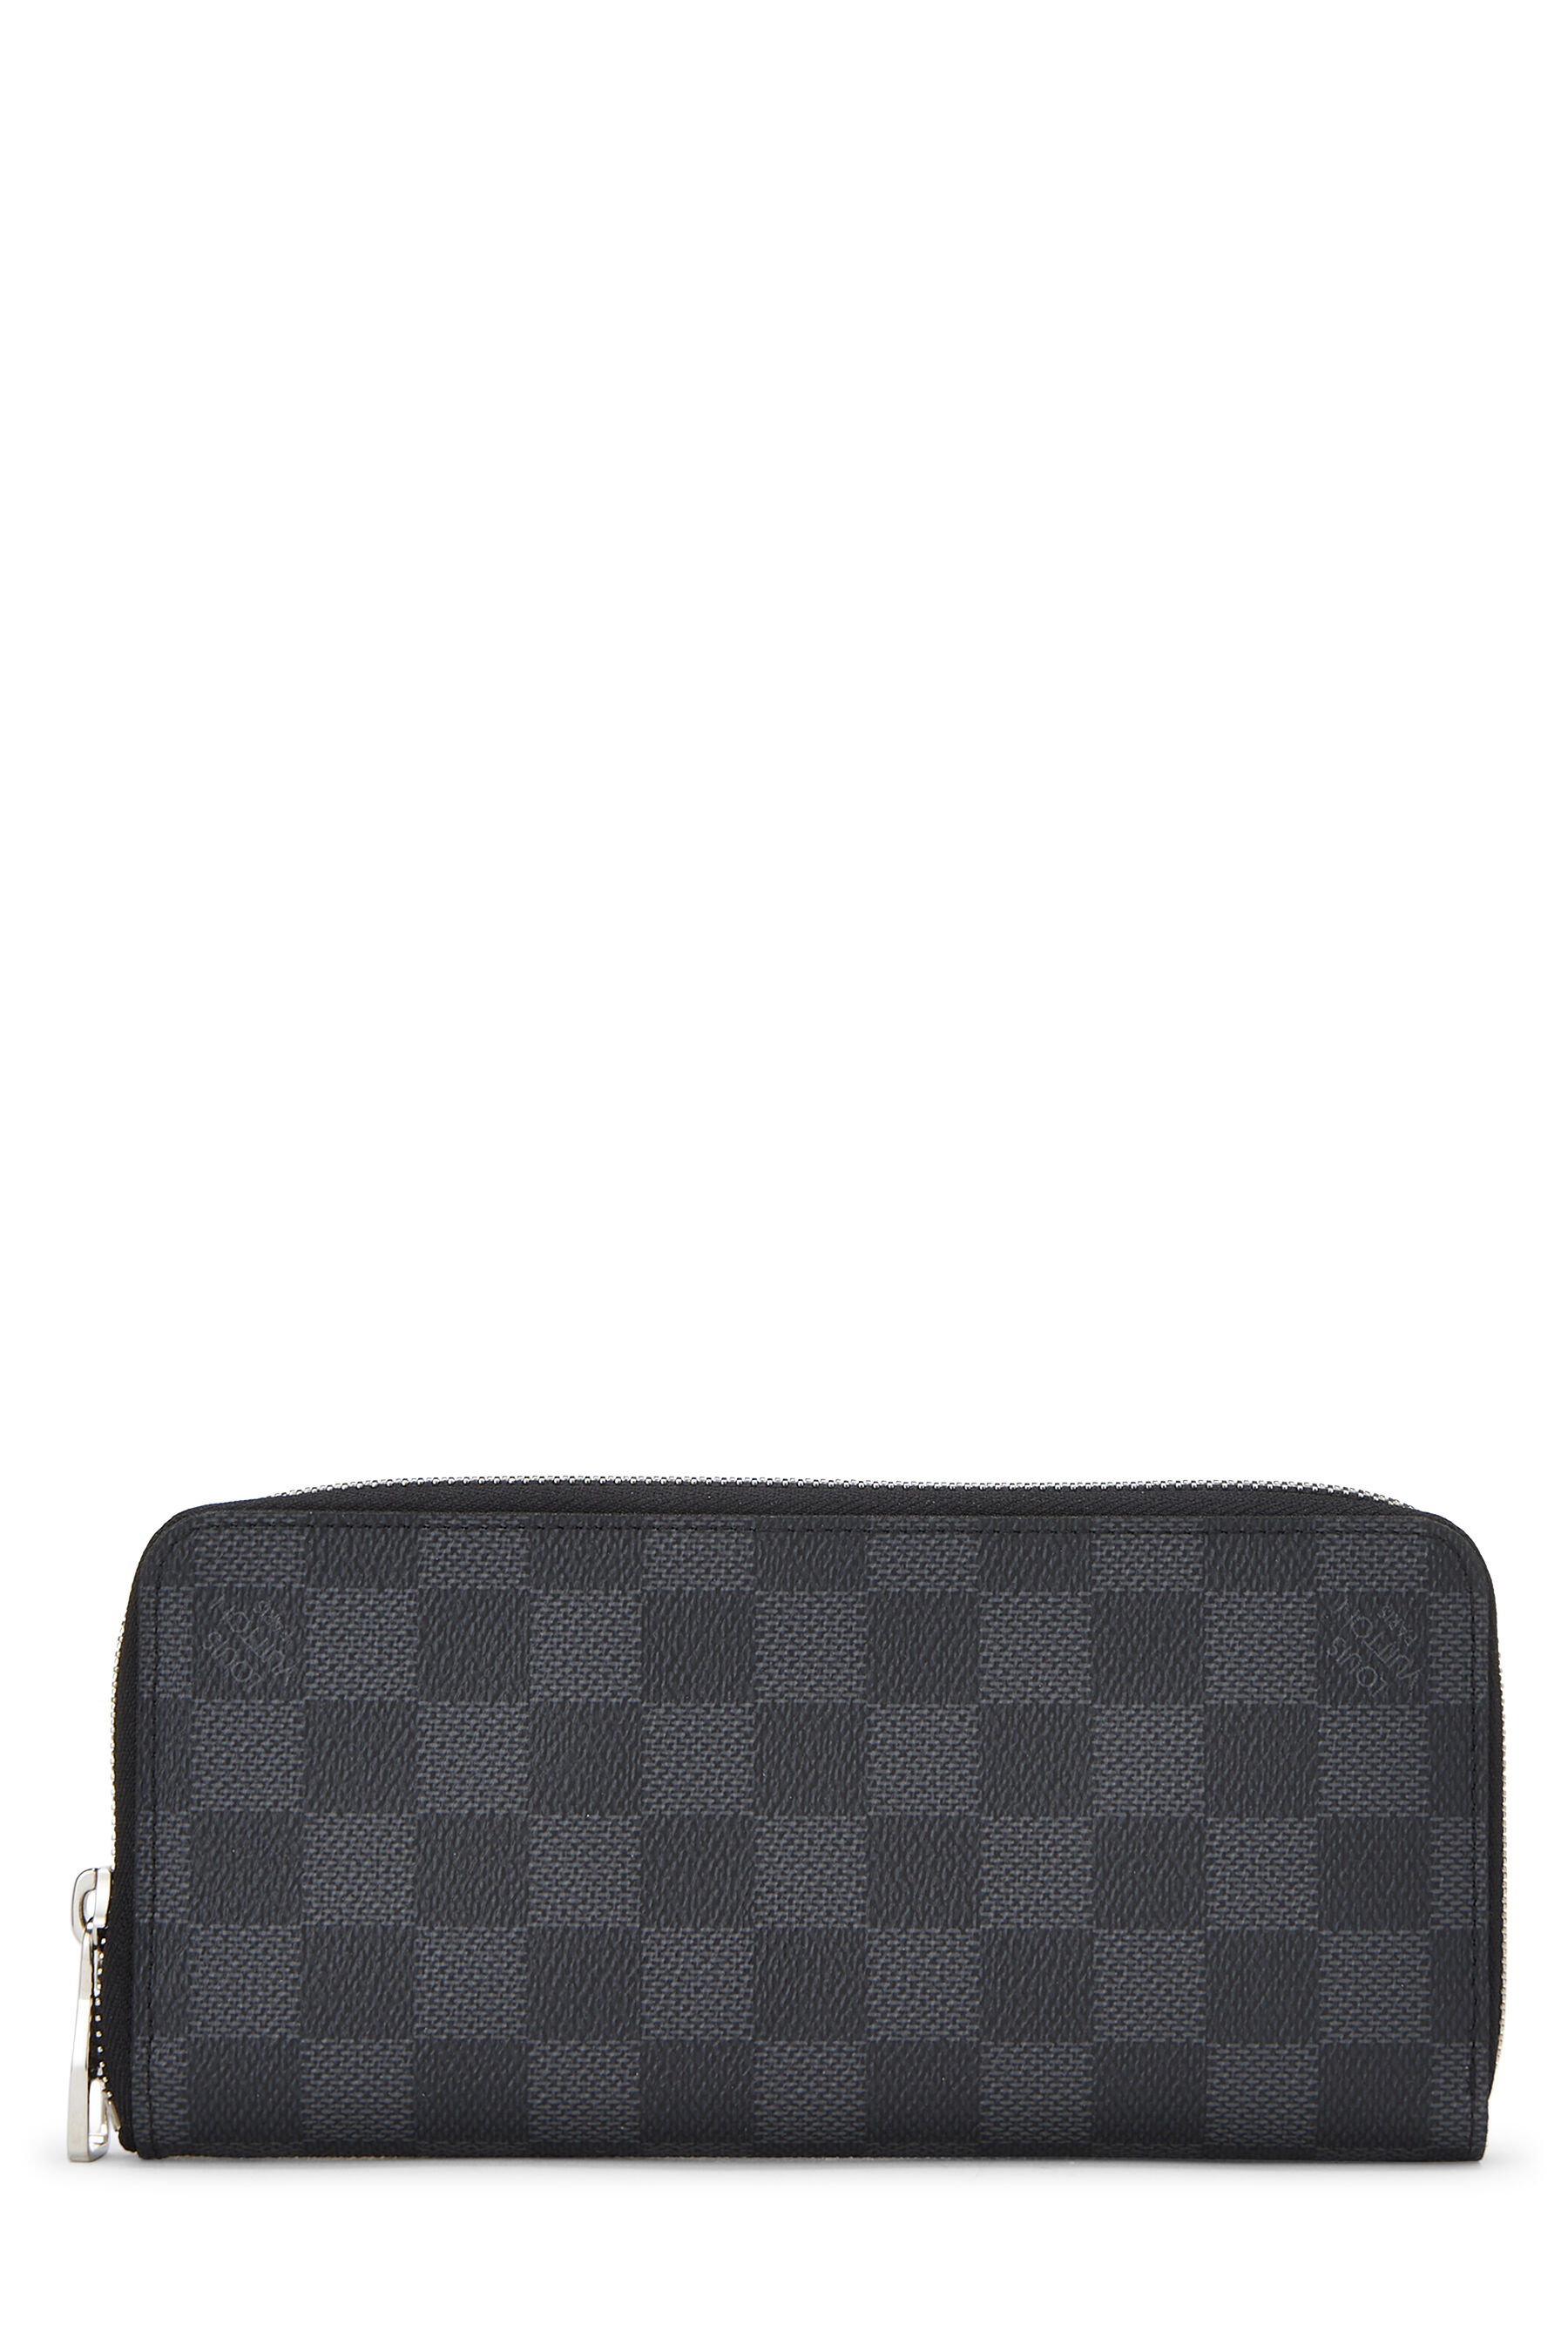 Authentic Louis Vuitton Zippy XL Taiga Leather Black Mens Big Wallet Clutch  Bag